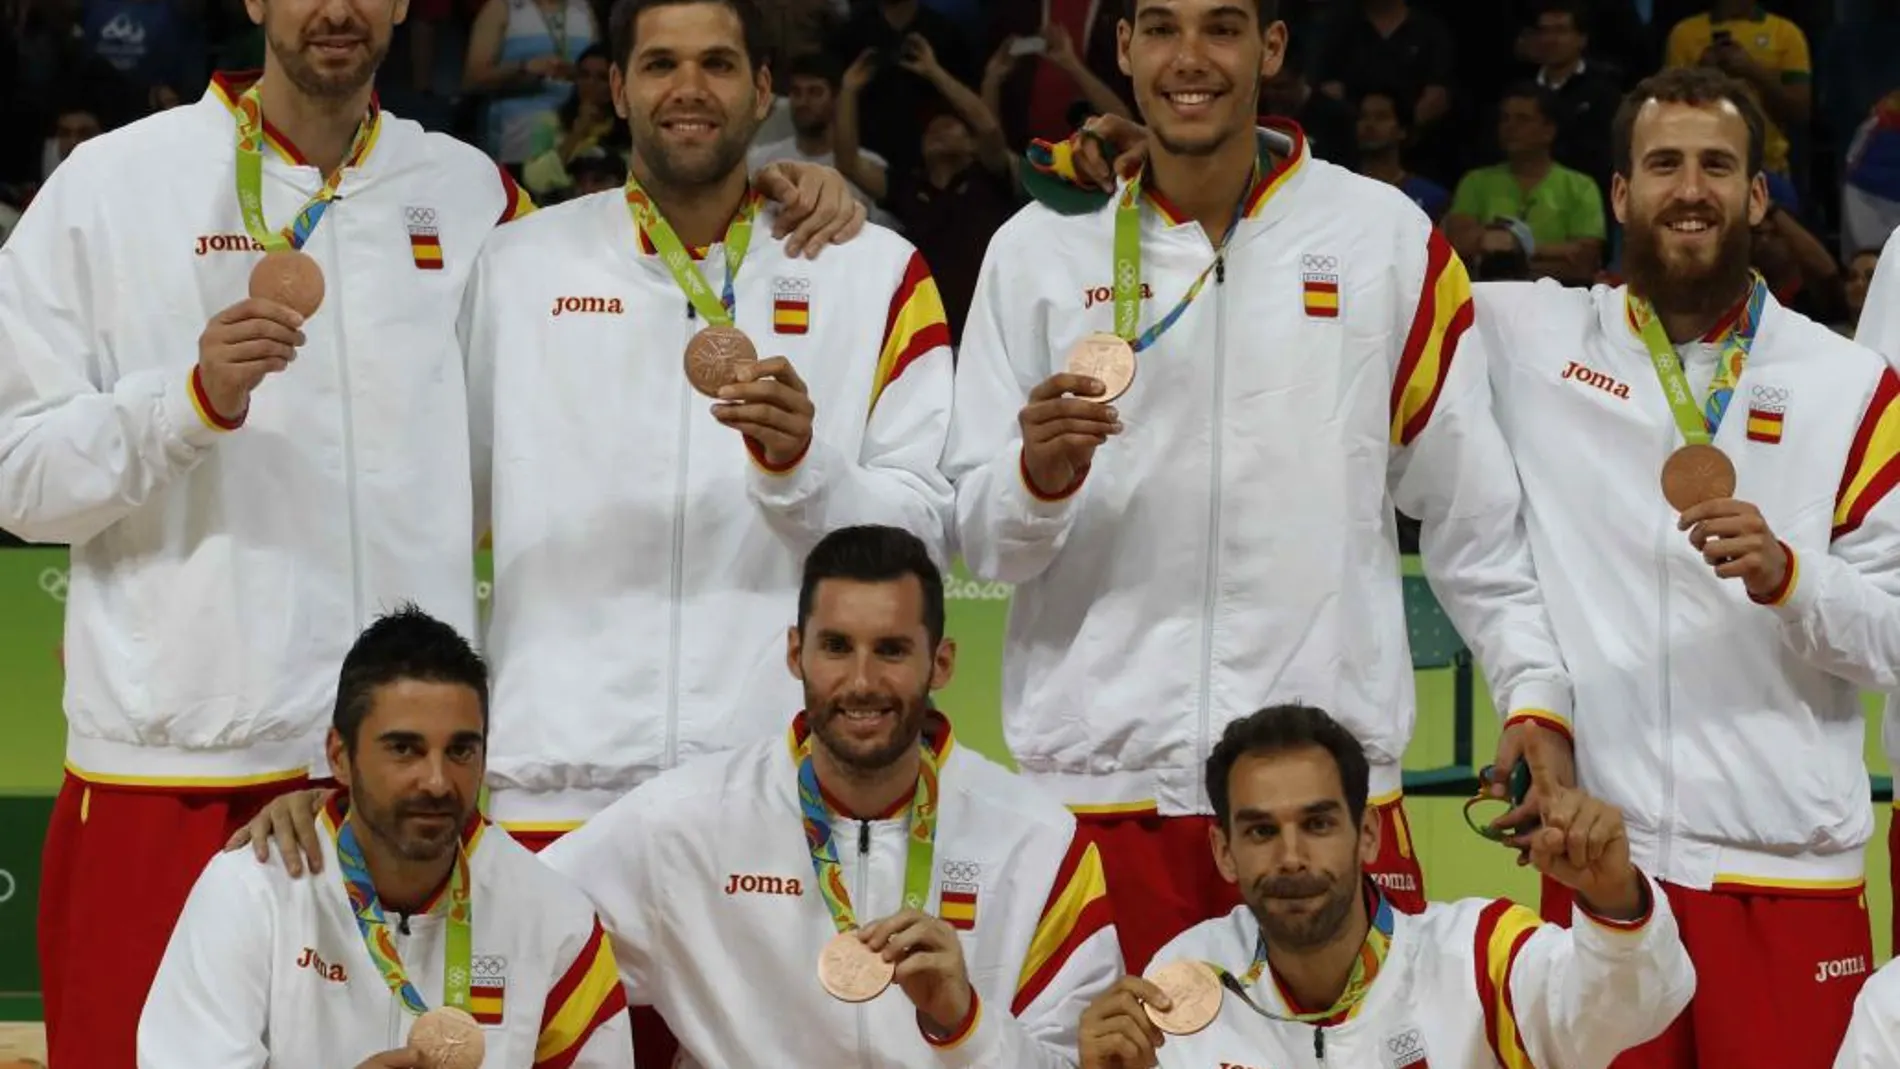 El equipo olímpico de baloncesto de España tras recibir la medalla de bronce